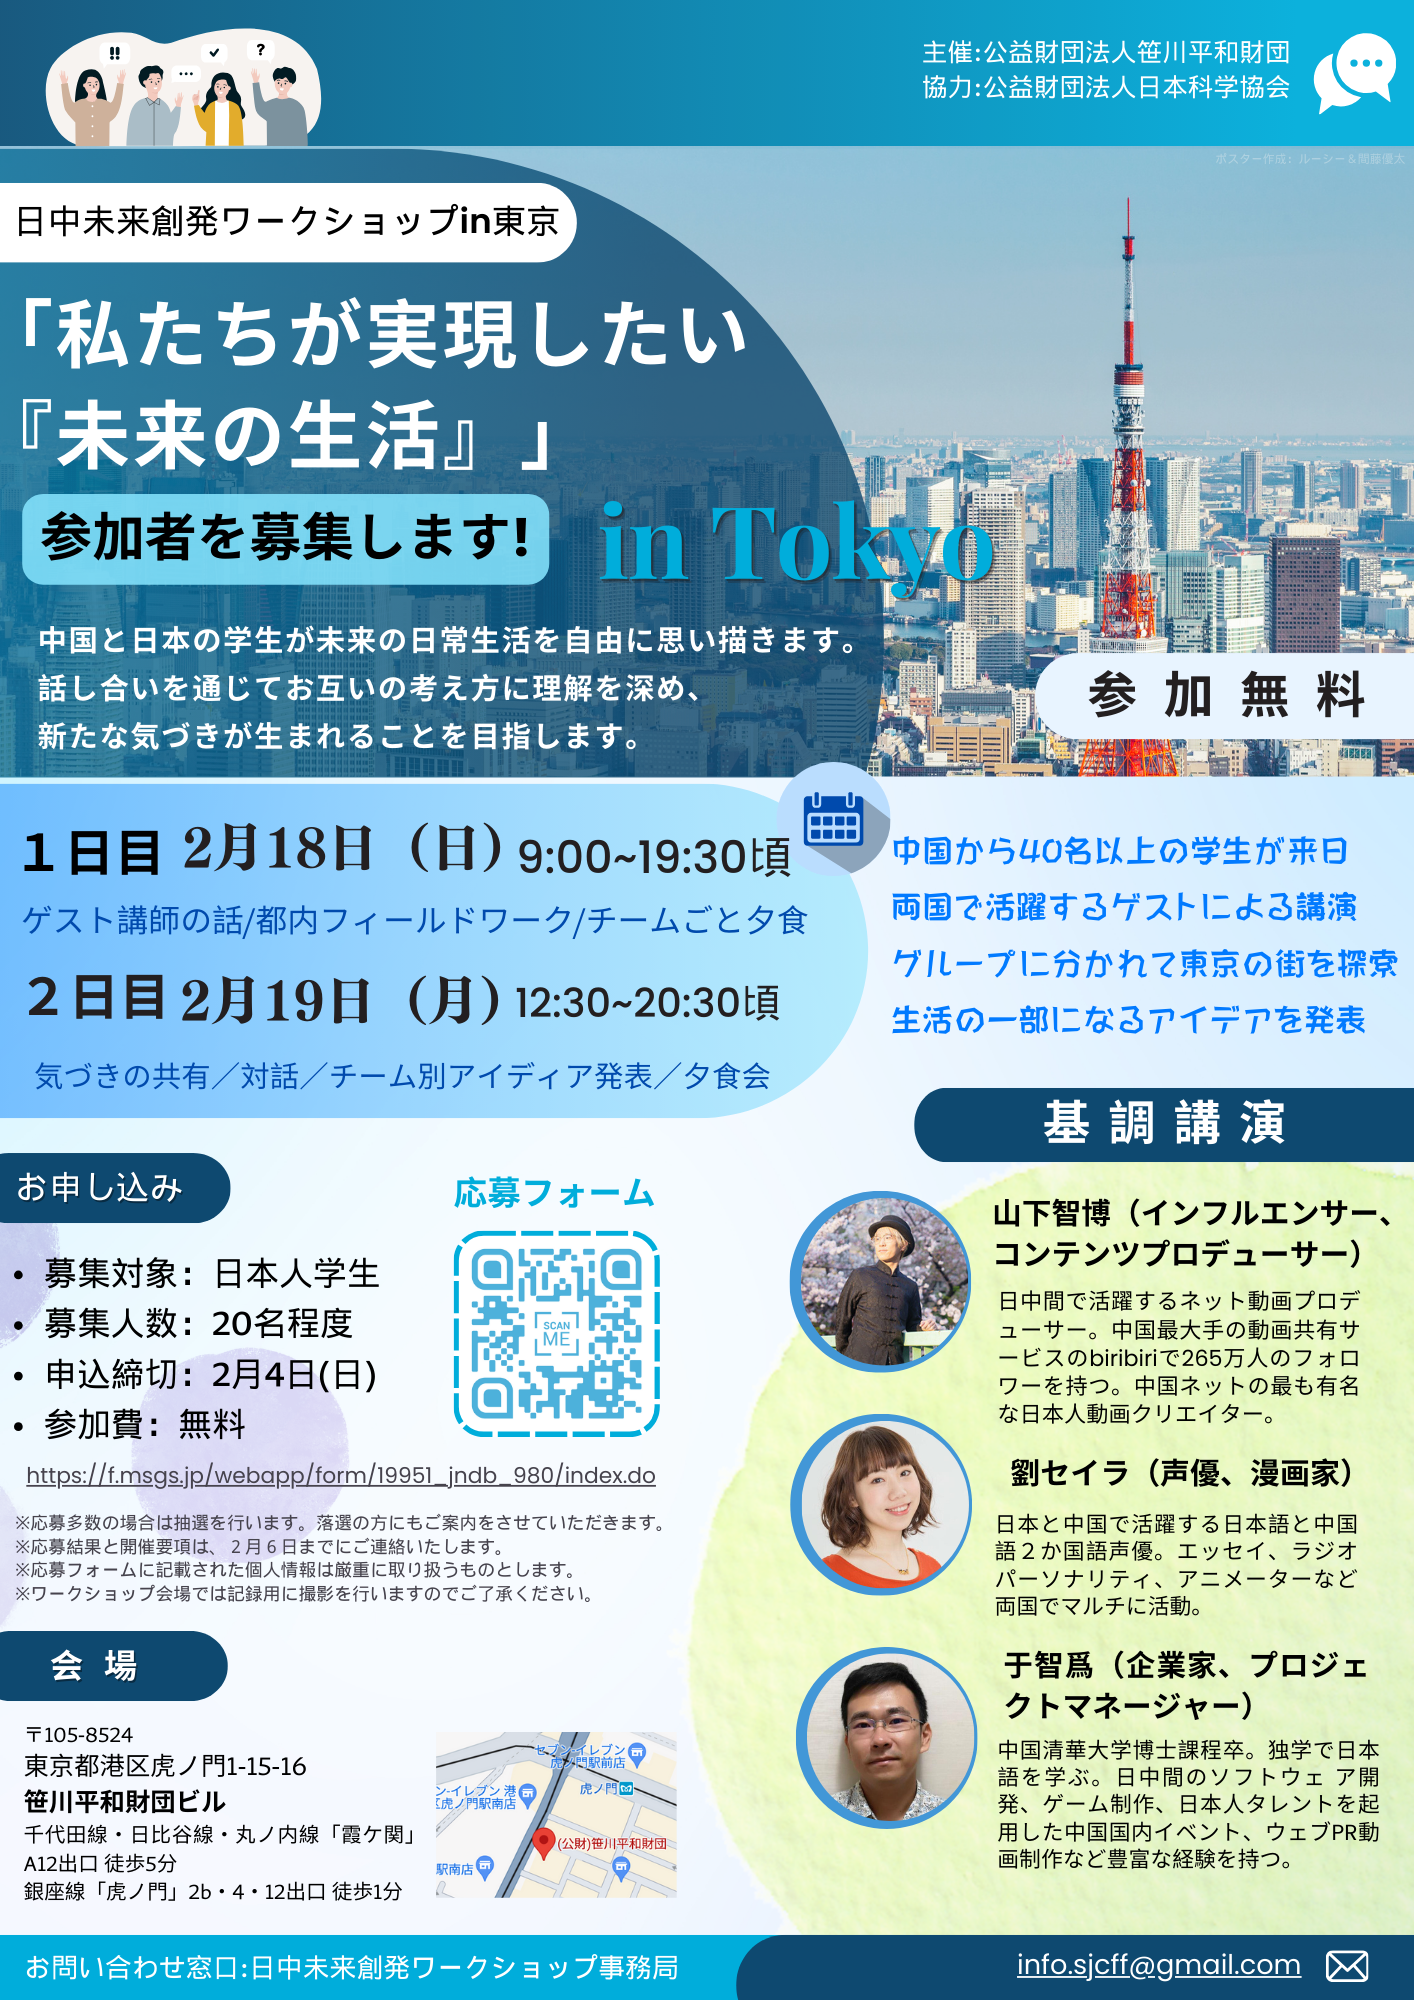 「日中未来創発ワークショップin東京～私たちが実現したい『未来の生活』」開催のお知らせ